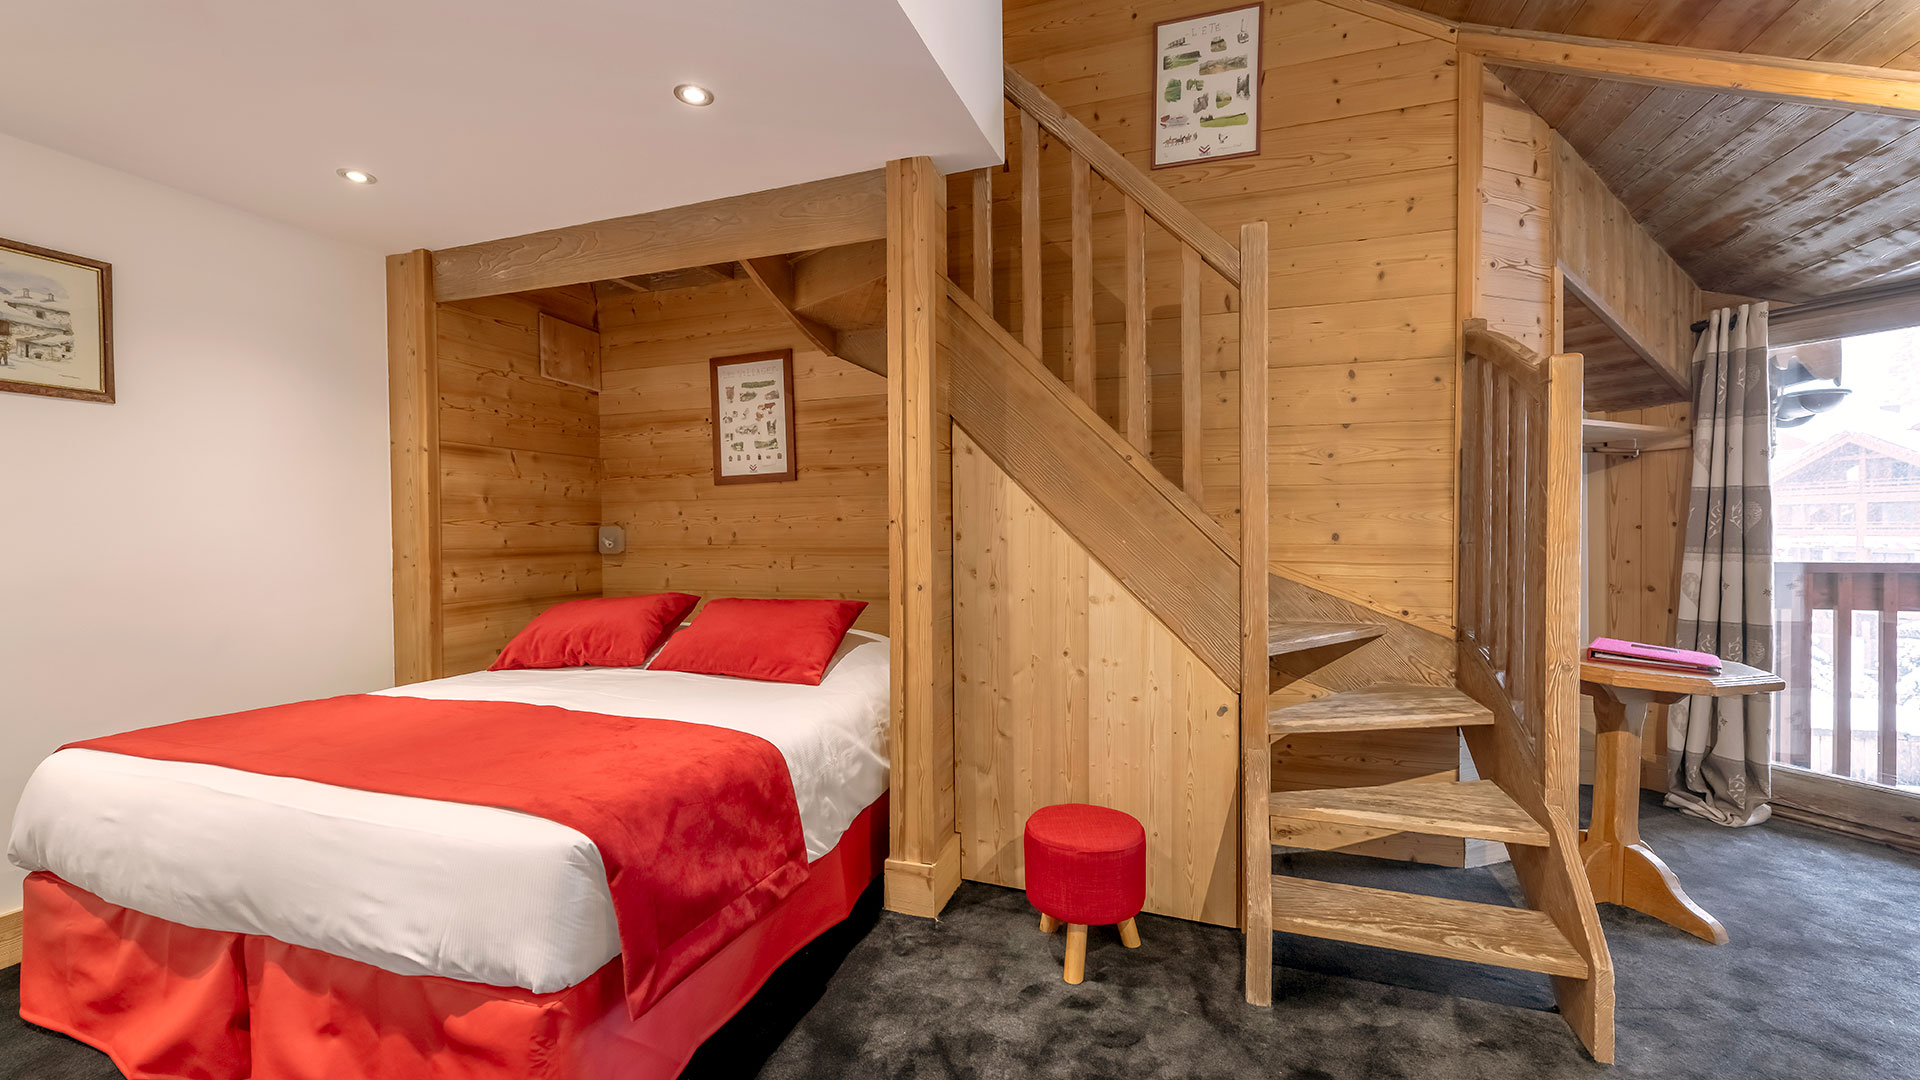 Chambre en duplex hôtel romantique Savoie